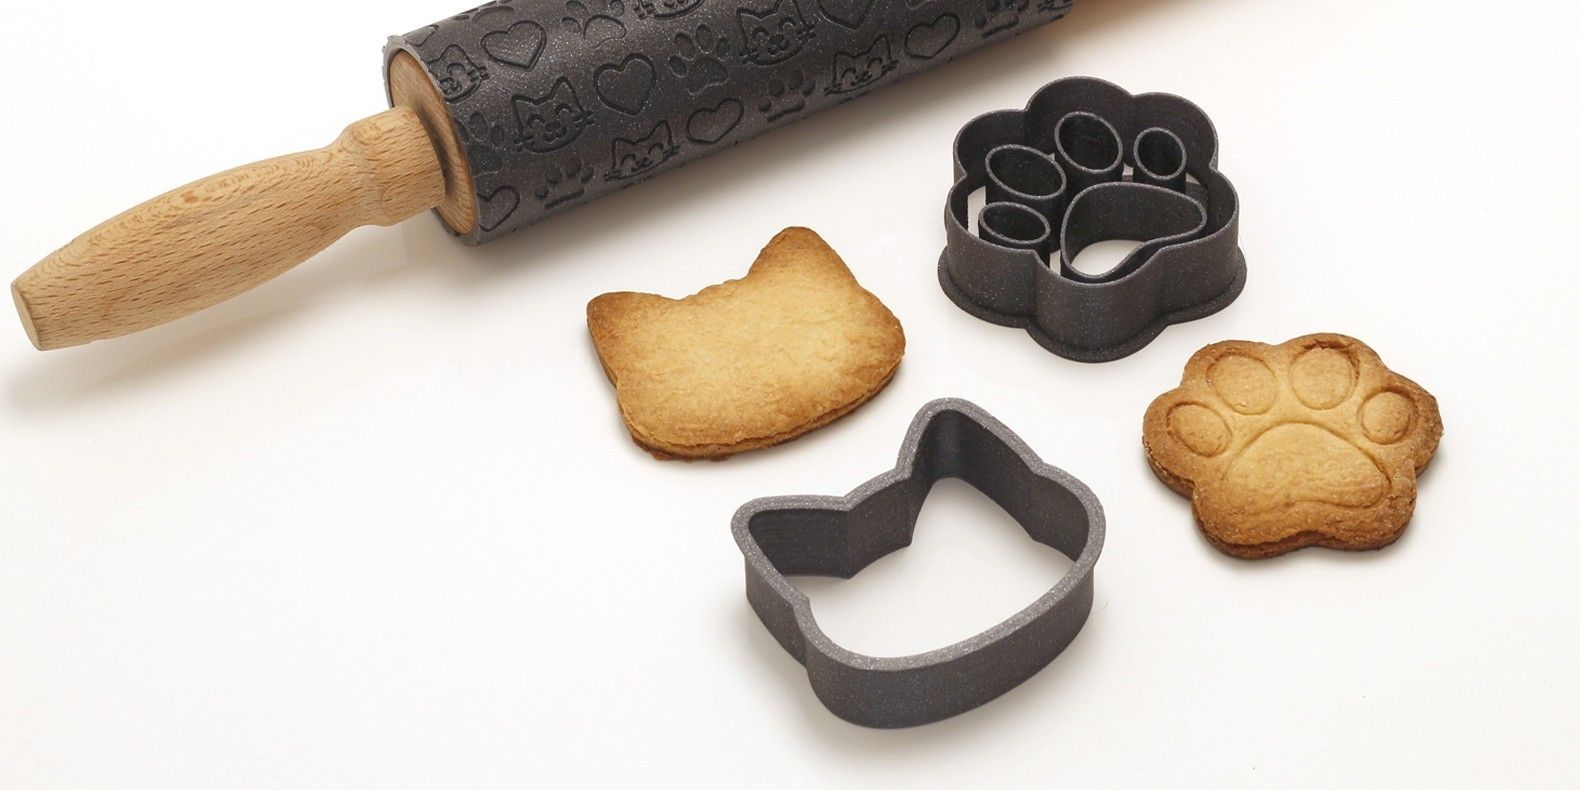 Вот подборка лучших 3D-моделей резаков для печенья, которые можно сделать с помощью 3D-принтера